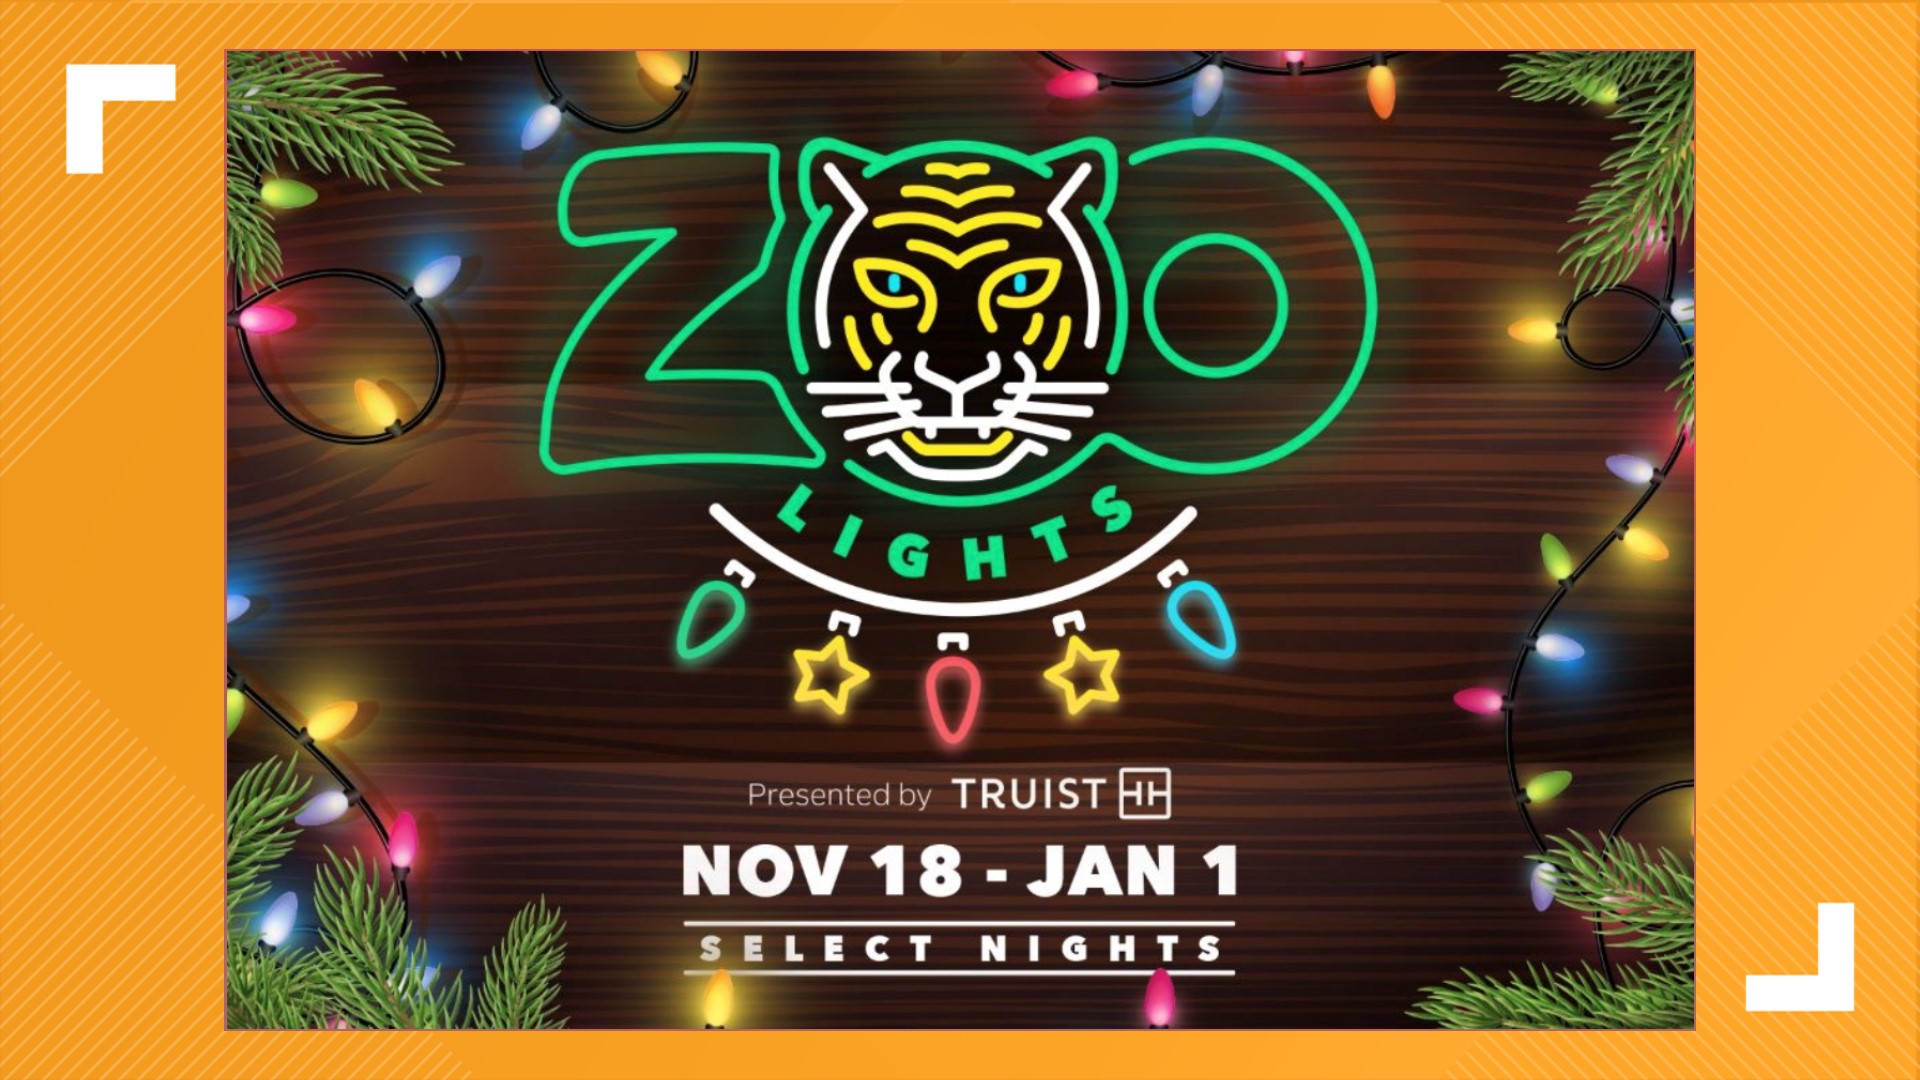 Memphis Zoo Lights returns for 2022